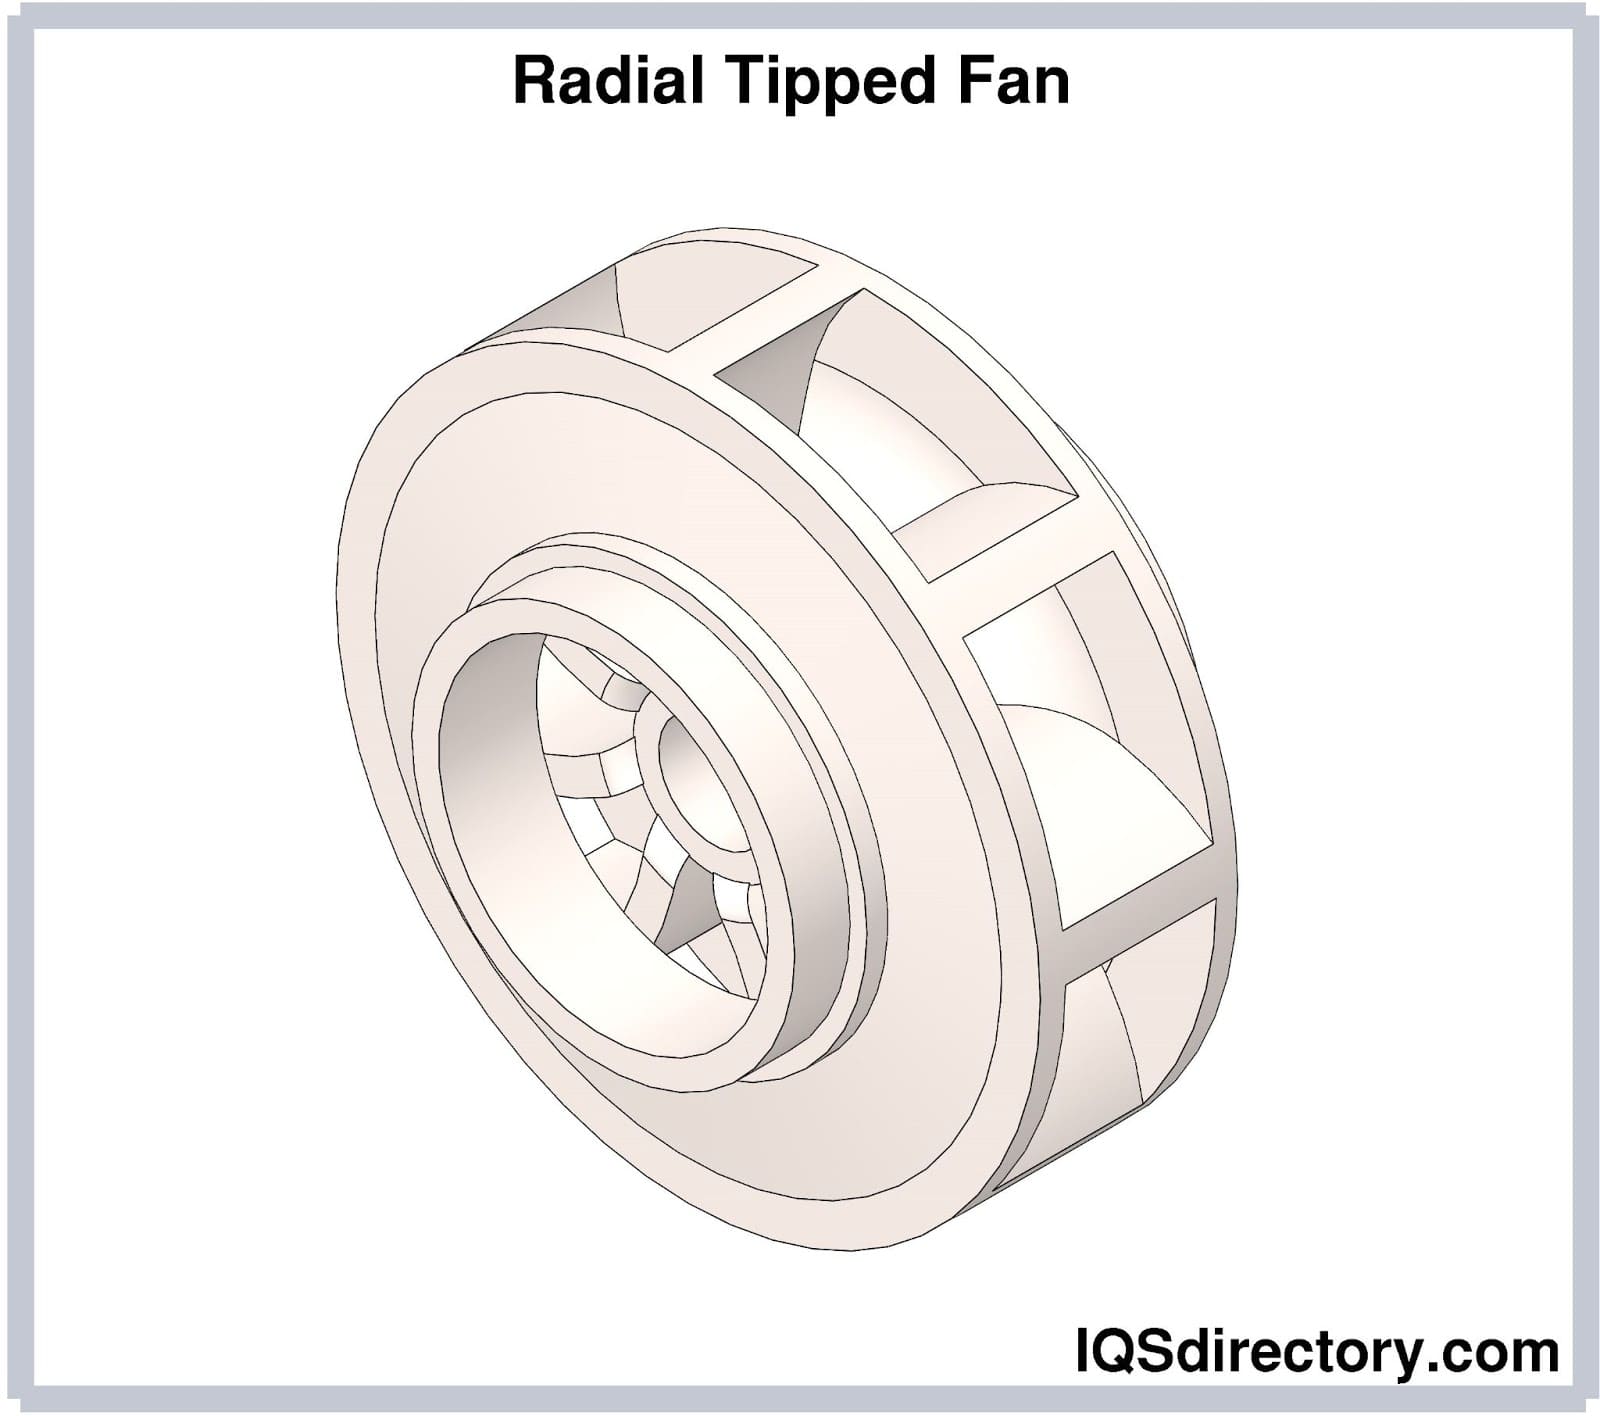 Radial Tipped Fan